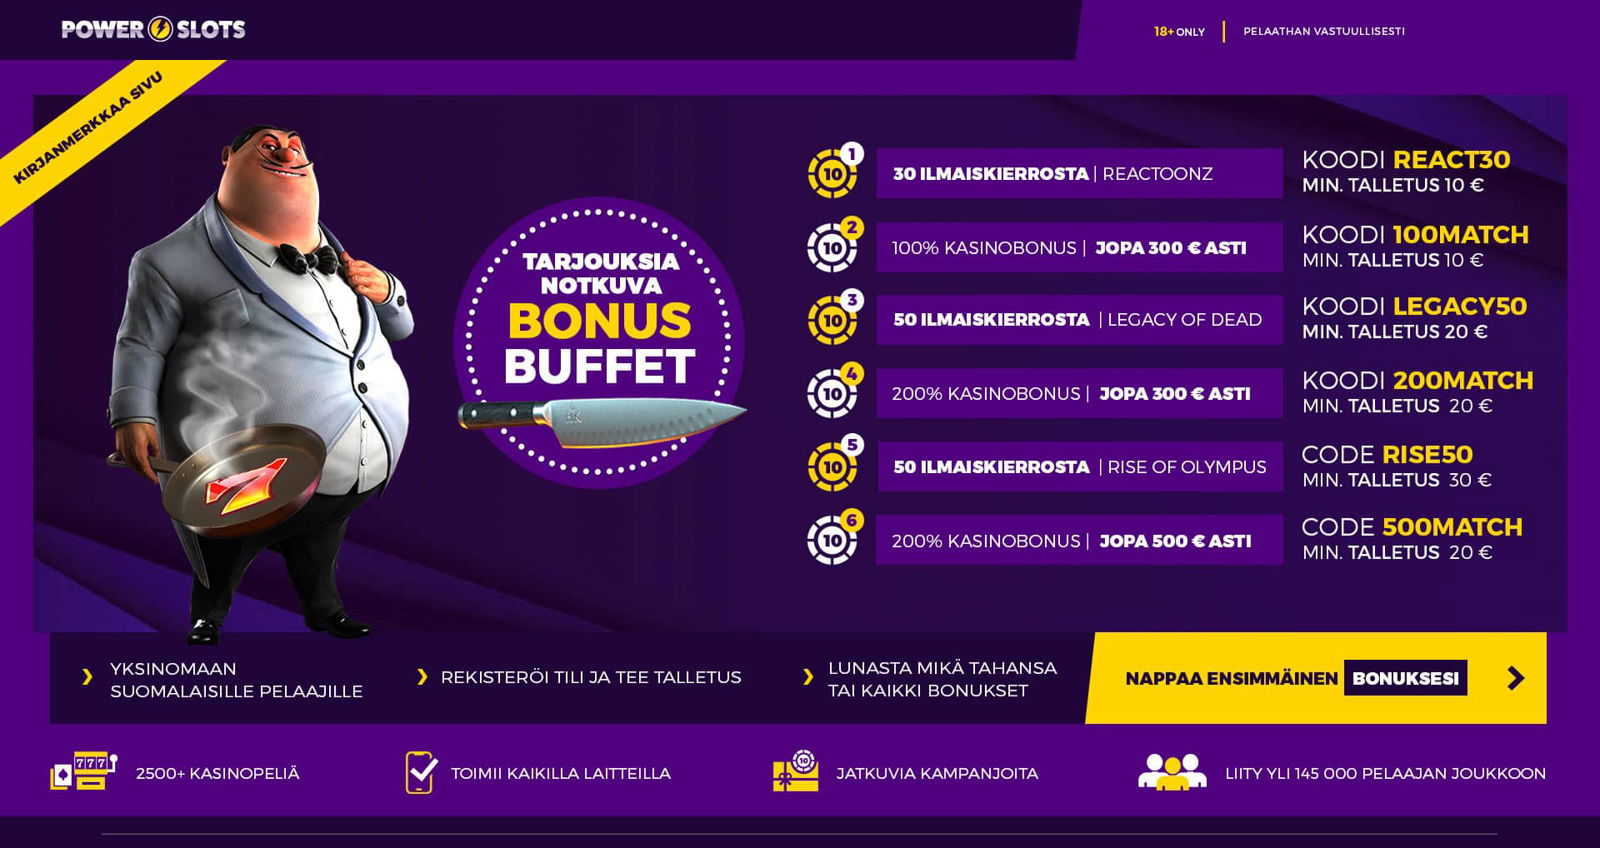 Casino | NP | Bonus Buffet | FI